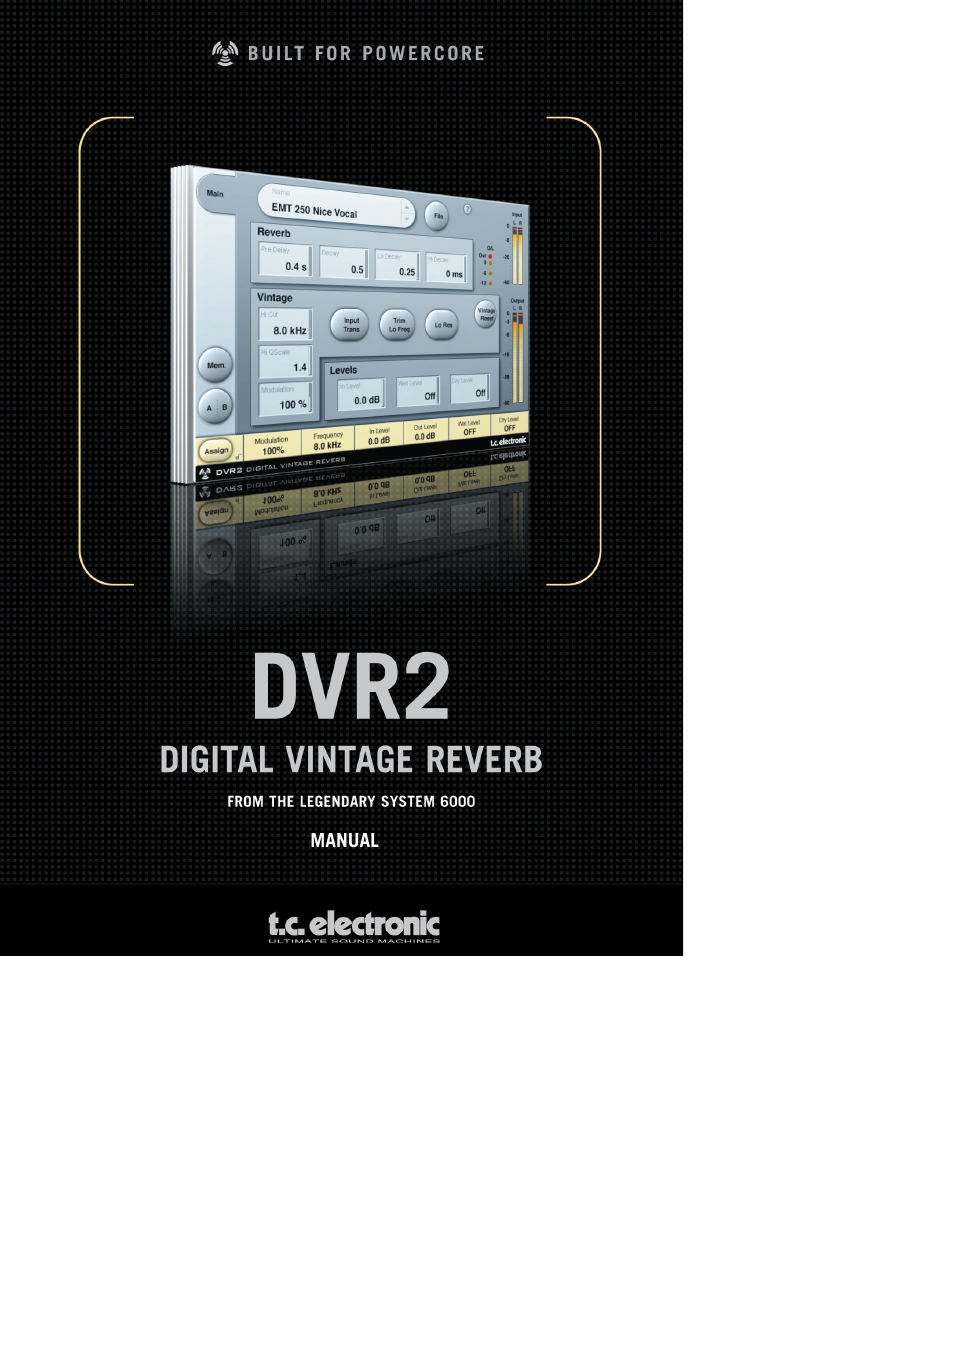 Digital Vintage Reverb DVR2